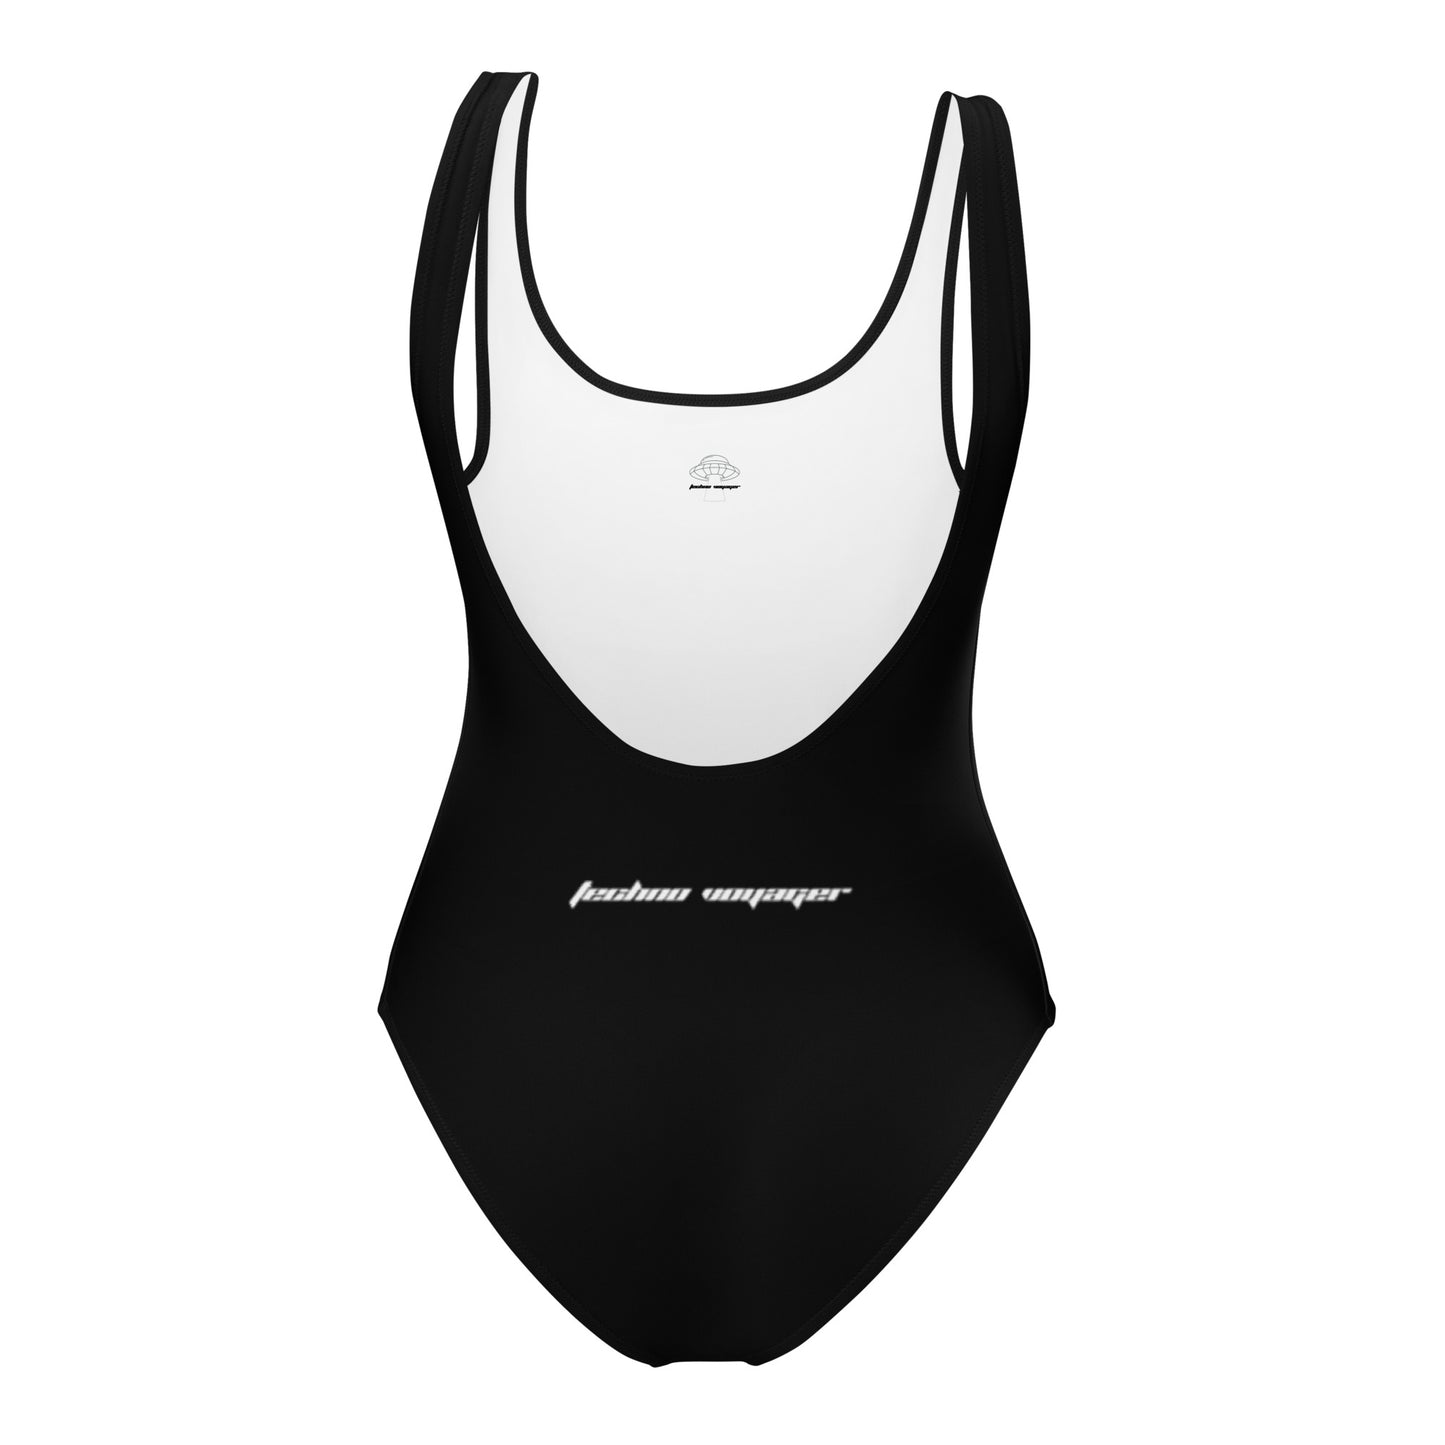 'OG-TECHNO-VOYAGER' Swimsuit